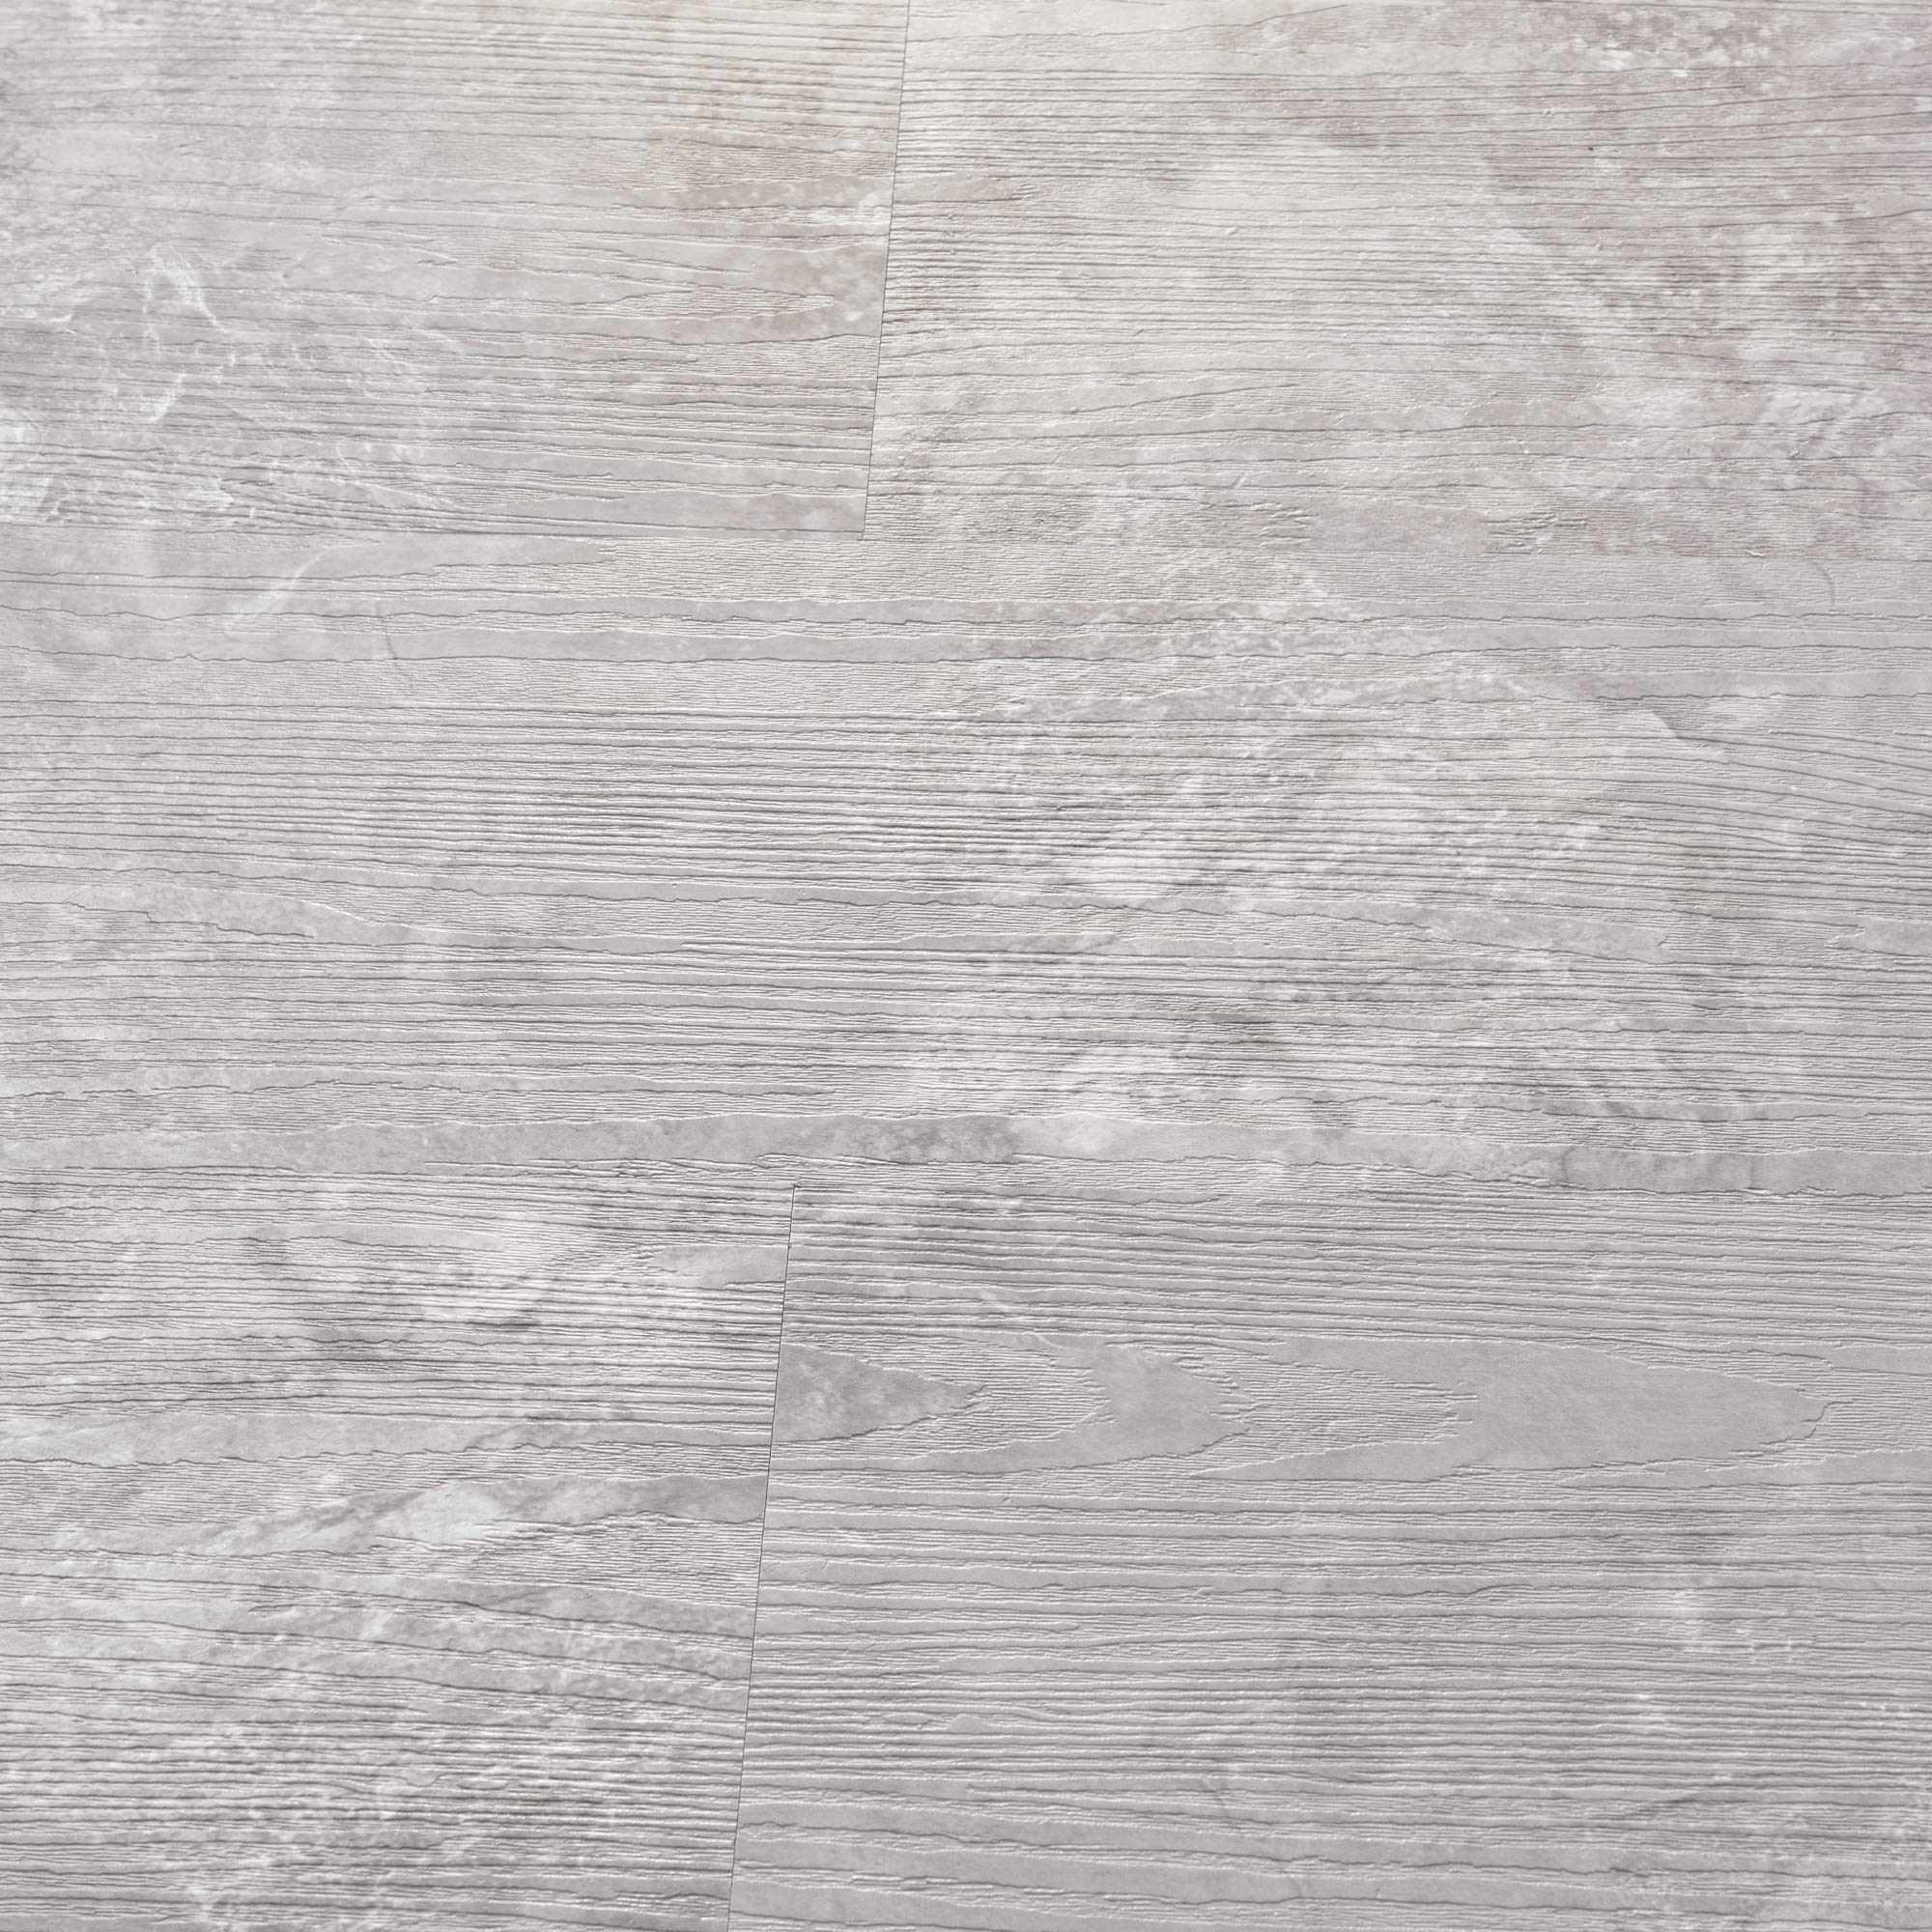 neu.holz Vinylboden Vanola Laminat Selbstklebend rutschfest Antiallergen Bodenbelag PVC-Platten 3,92 m² Slate Grey Oak